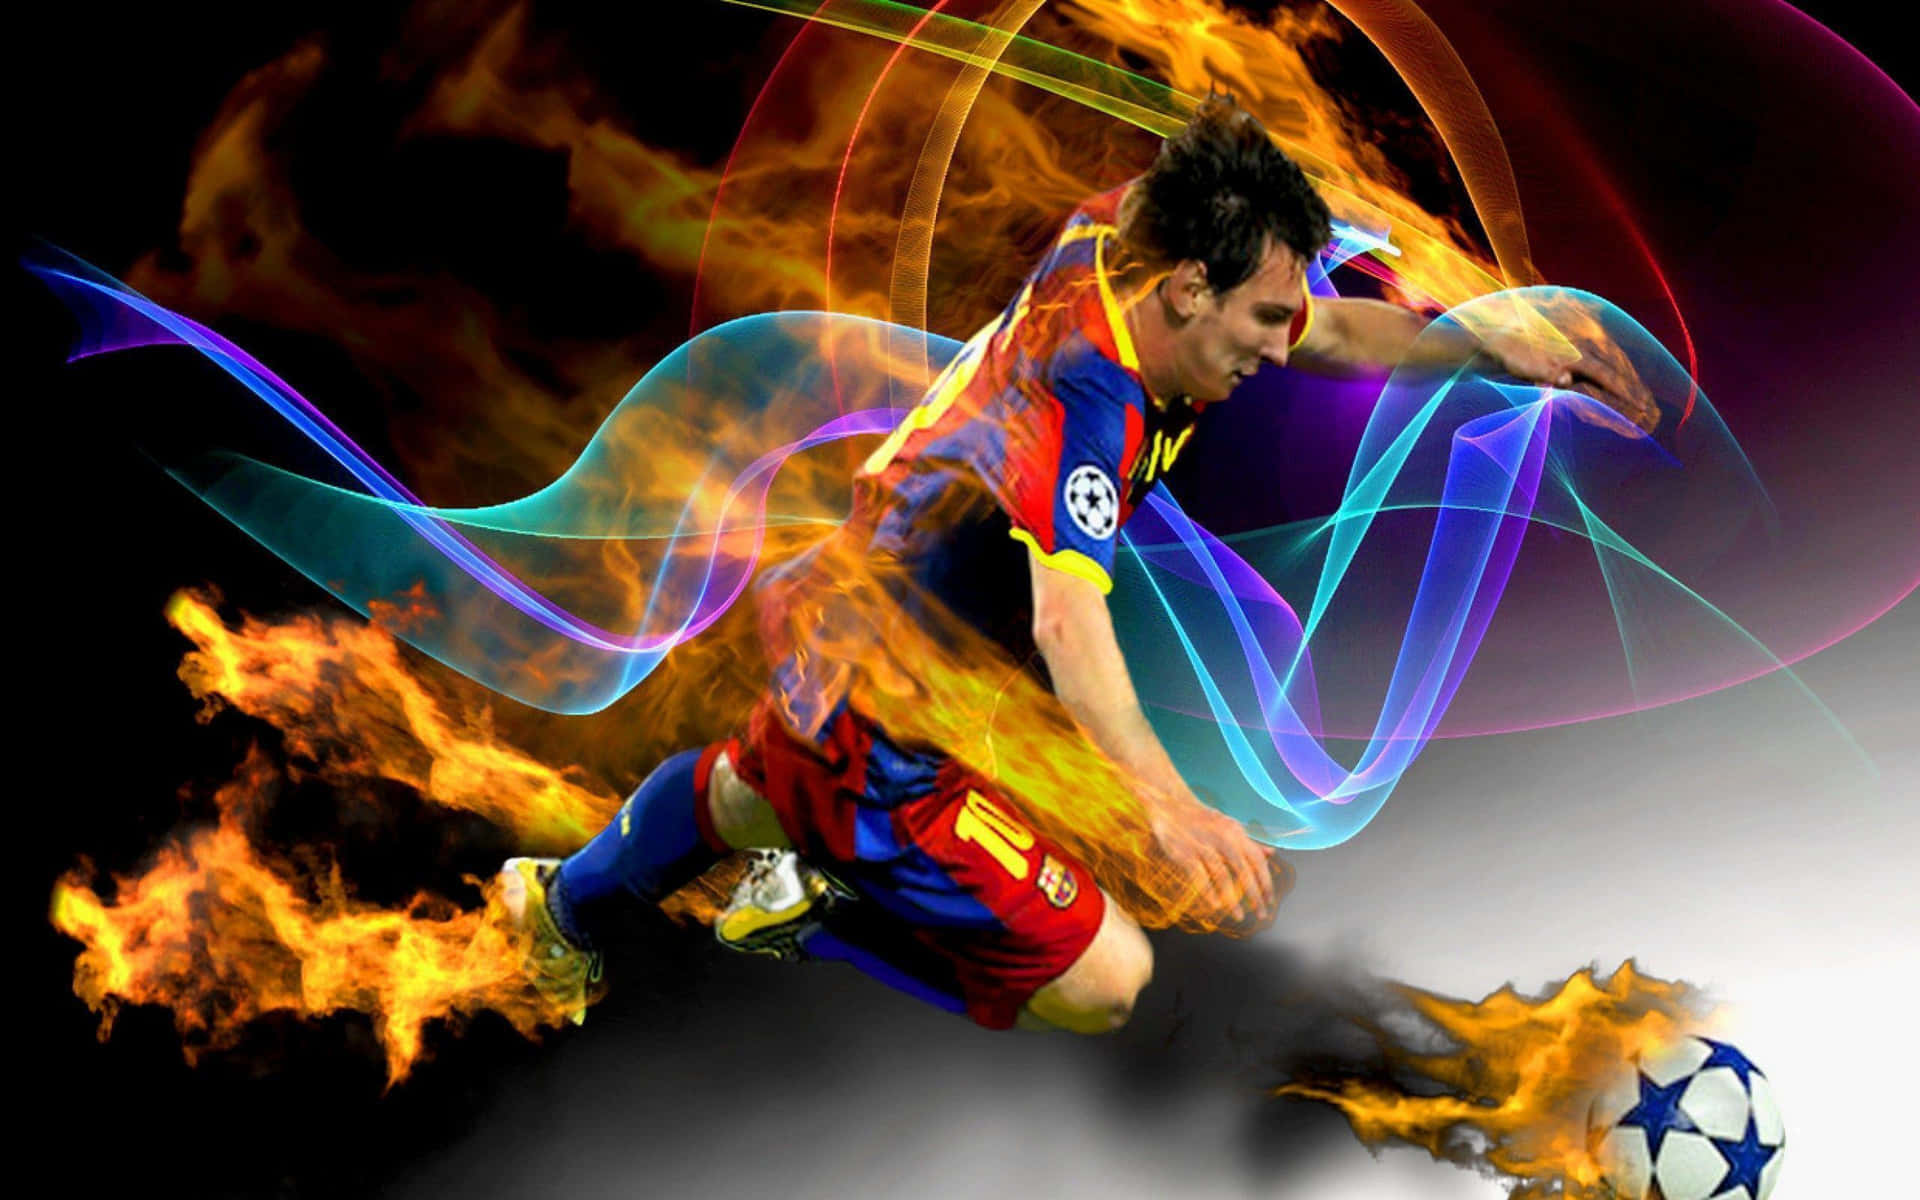 Fire Fodboldspiller Lionel Messi Billeder